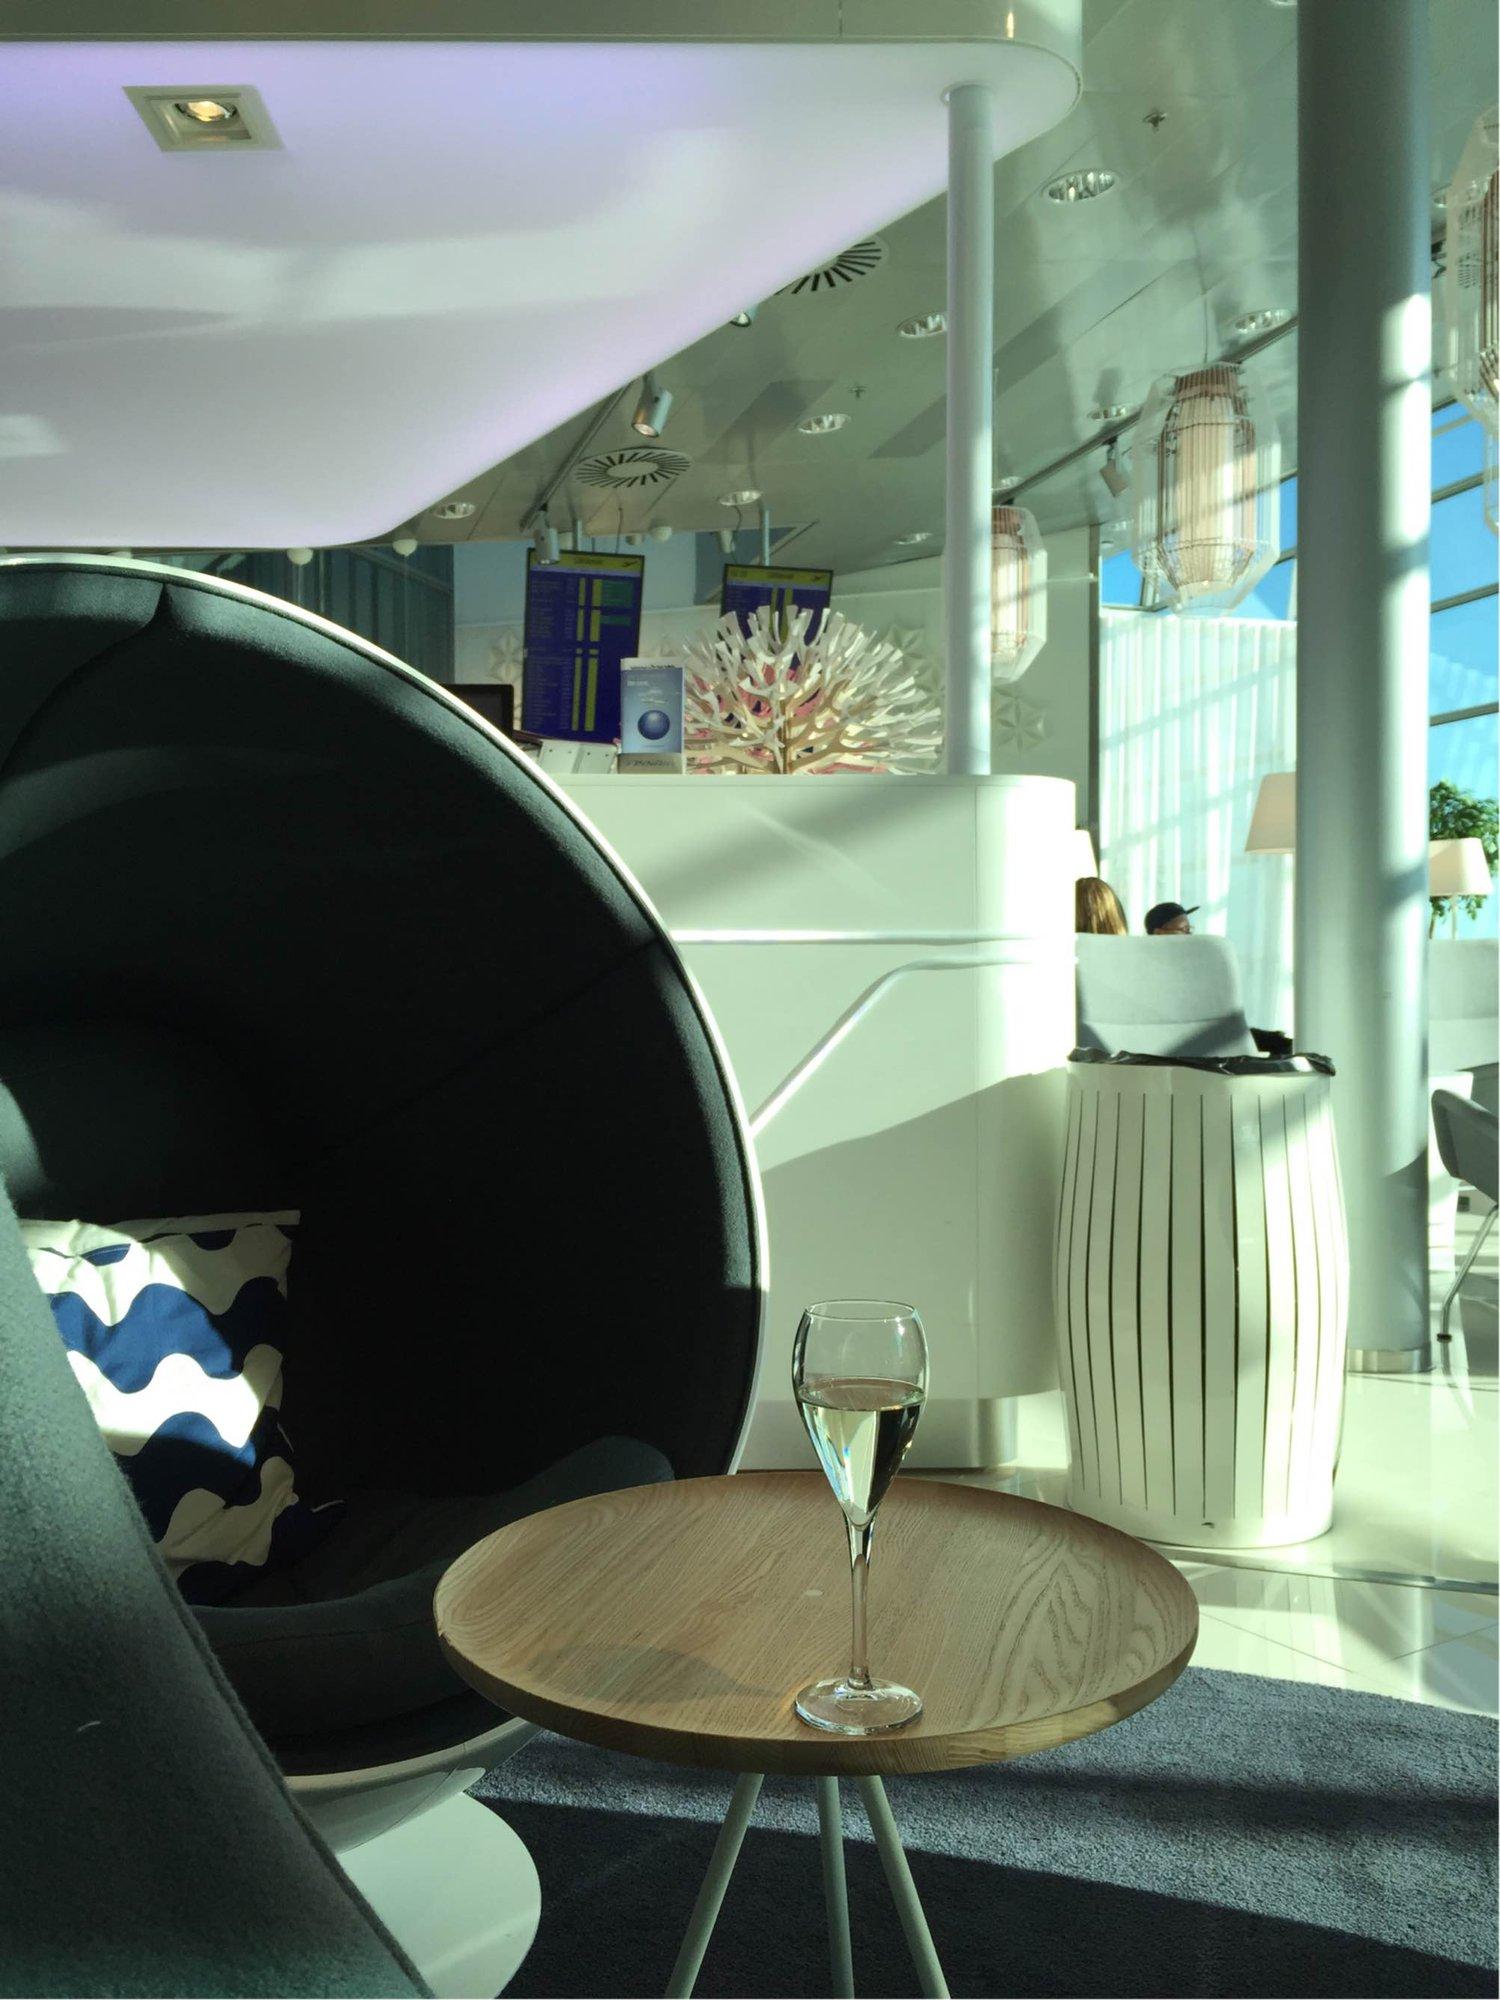 Finnair Lounge image 1 of 38